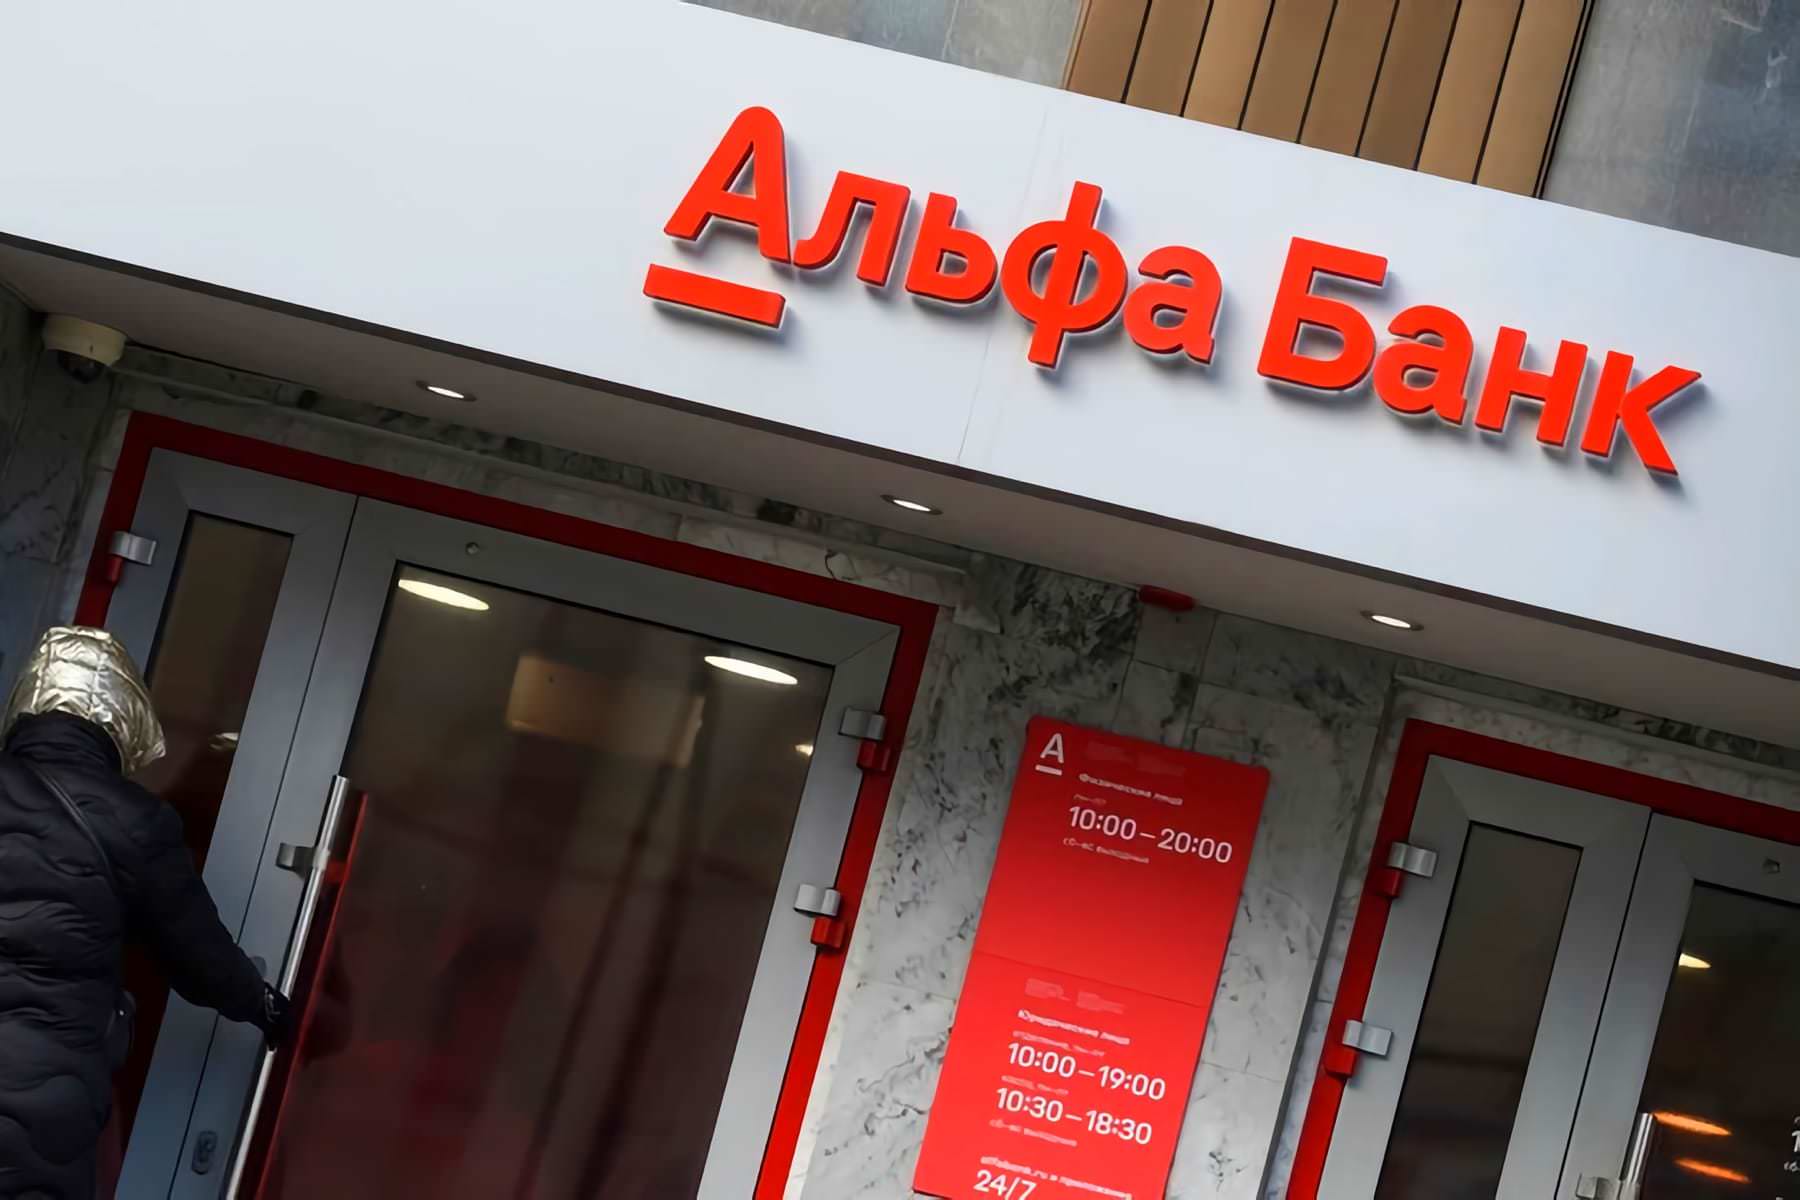 Альфа Банк, який пов'язаний з московитами досі працює в Україні та хоче перейменуватись і обманути українців